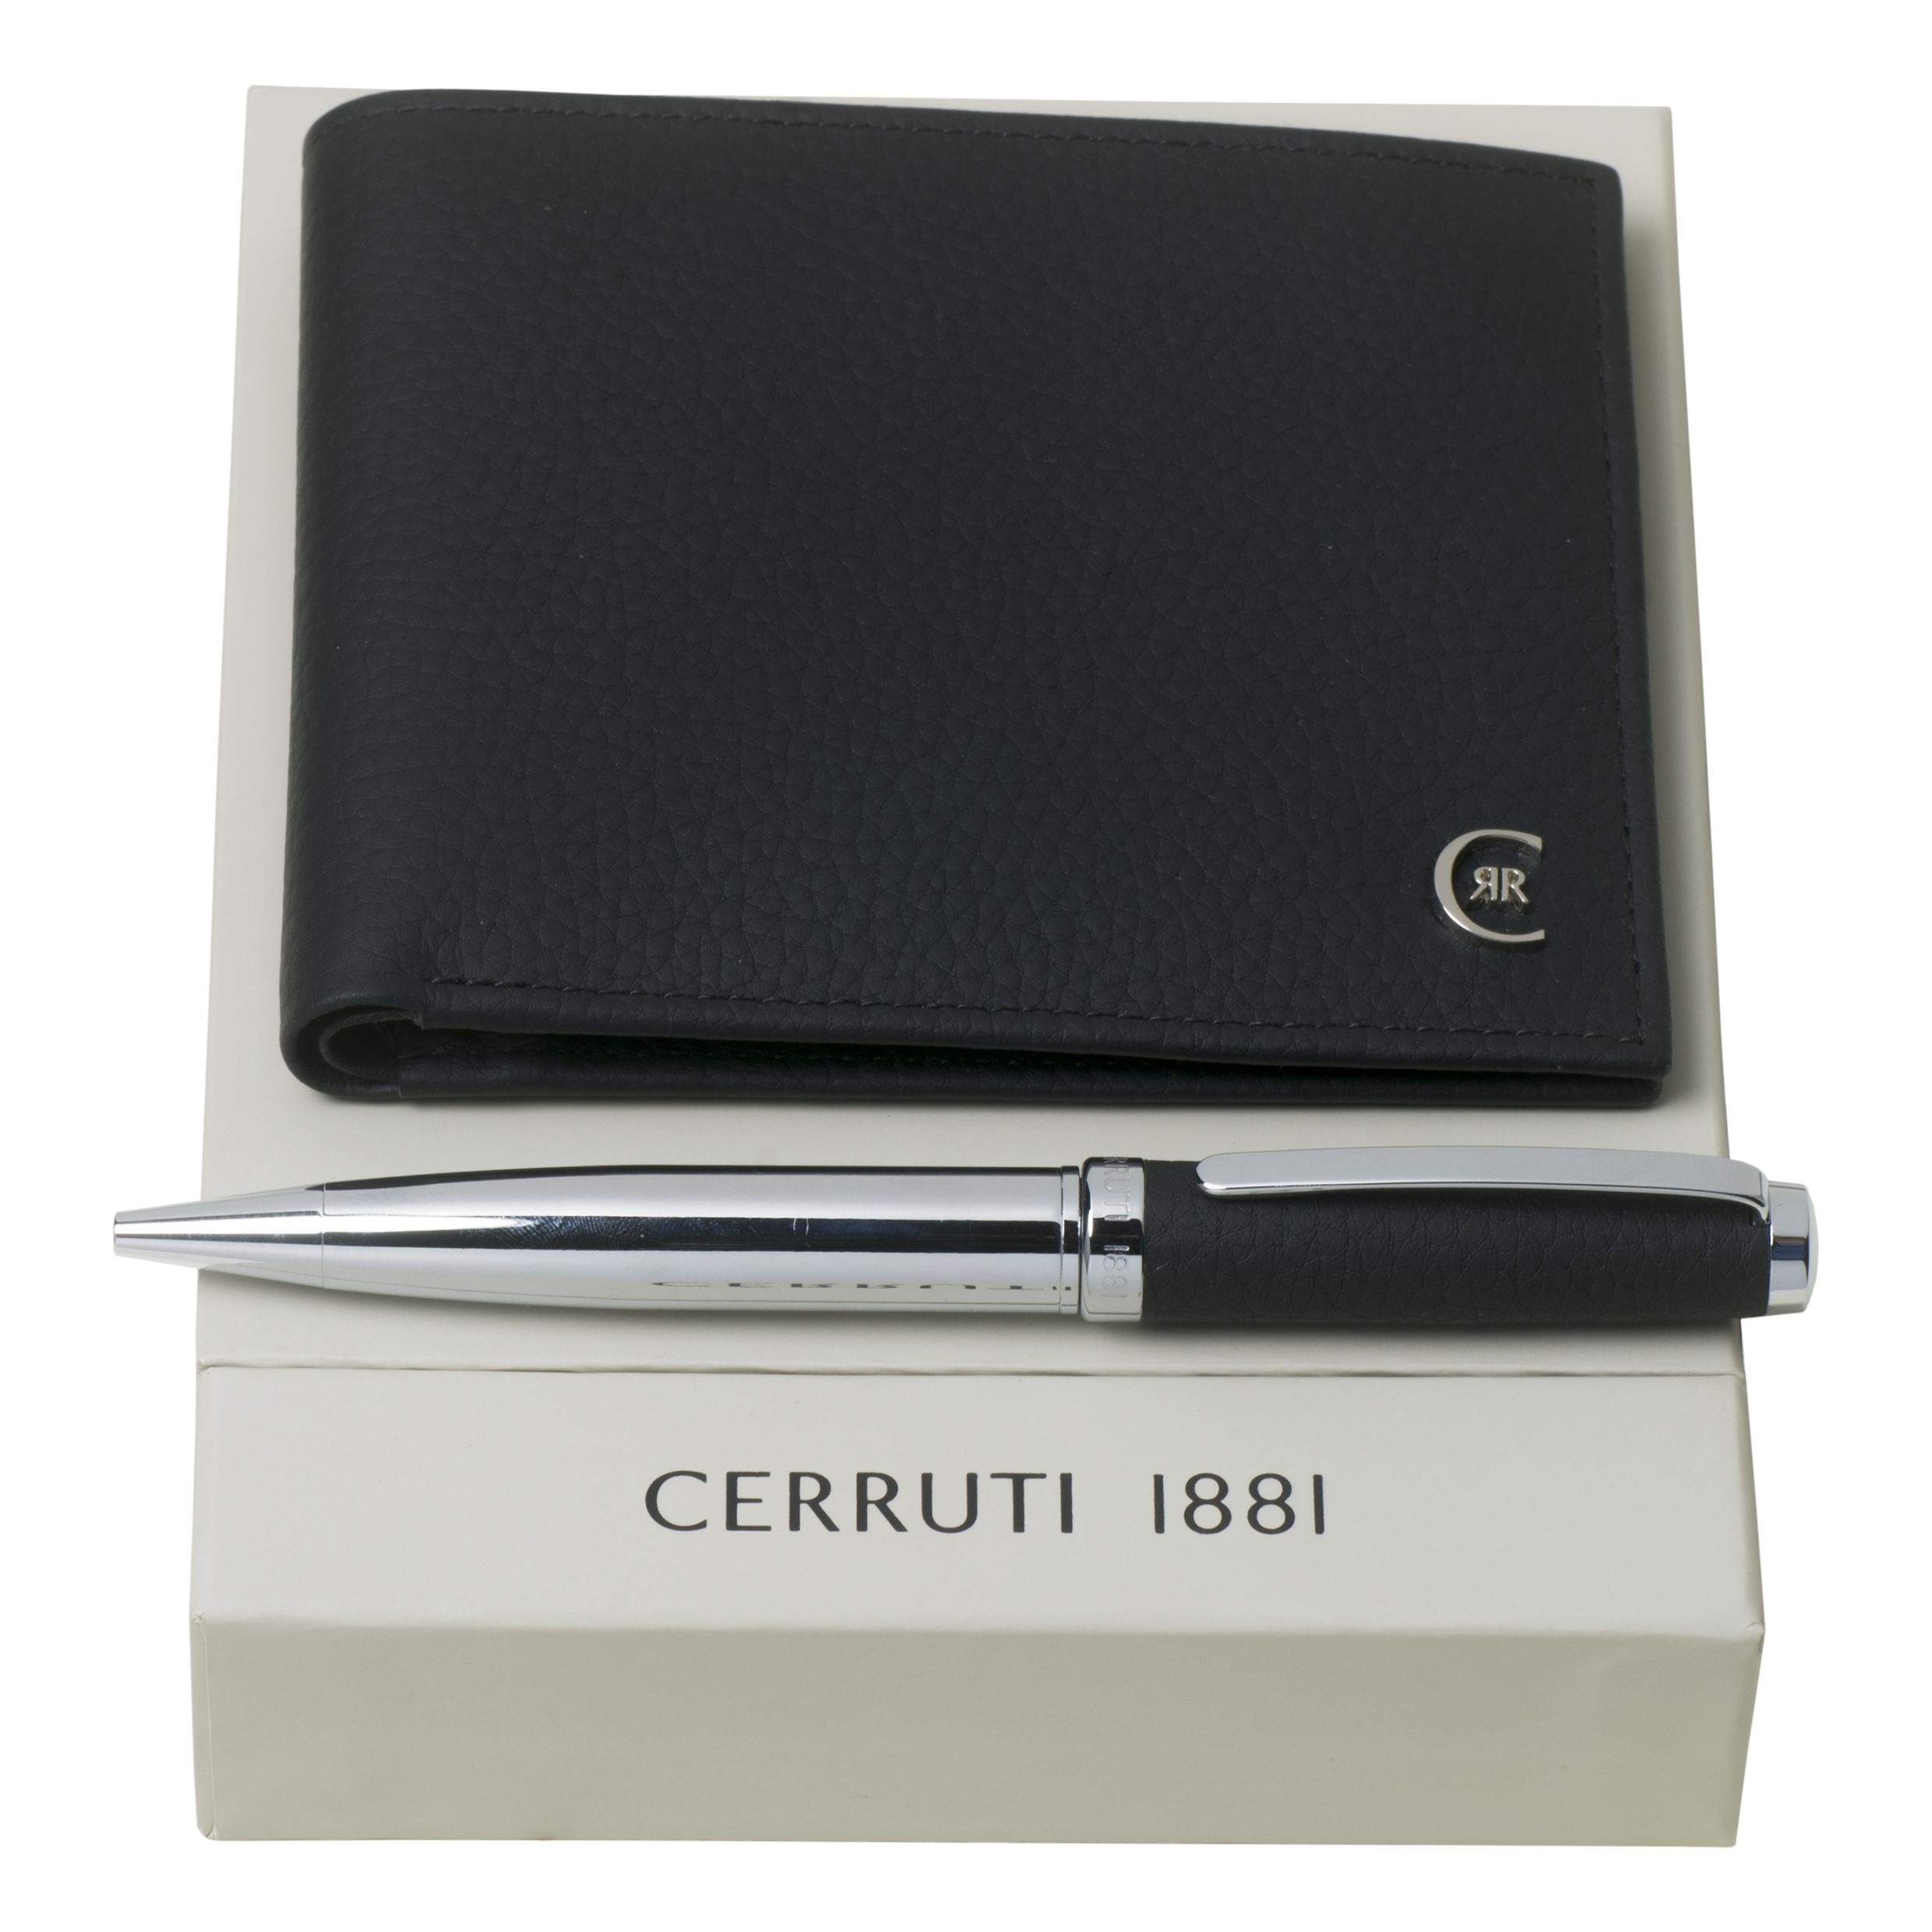 Zestaw upominkowy Cerruti 1881 długopis i portfel - NLM711A + NSU7114A